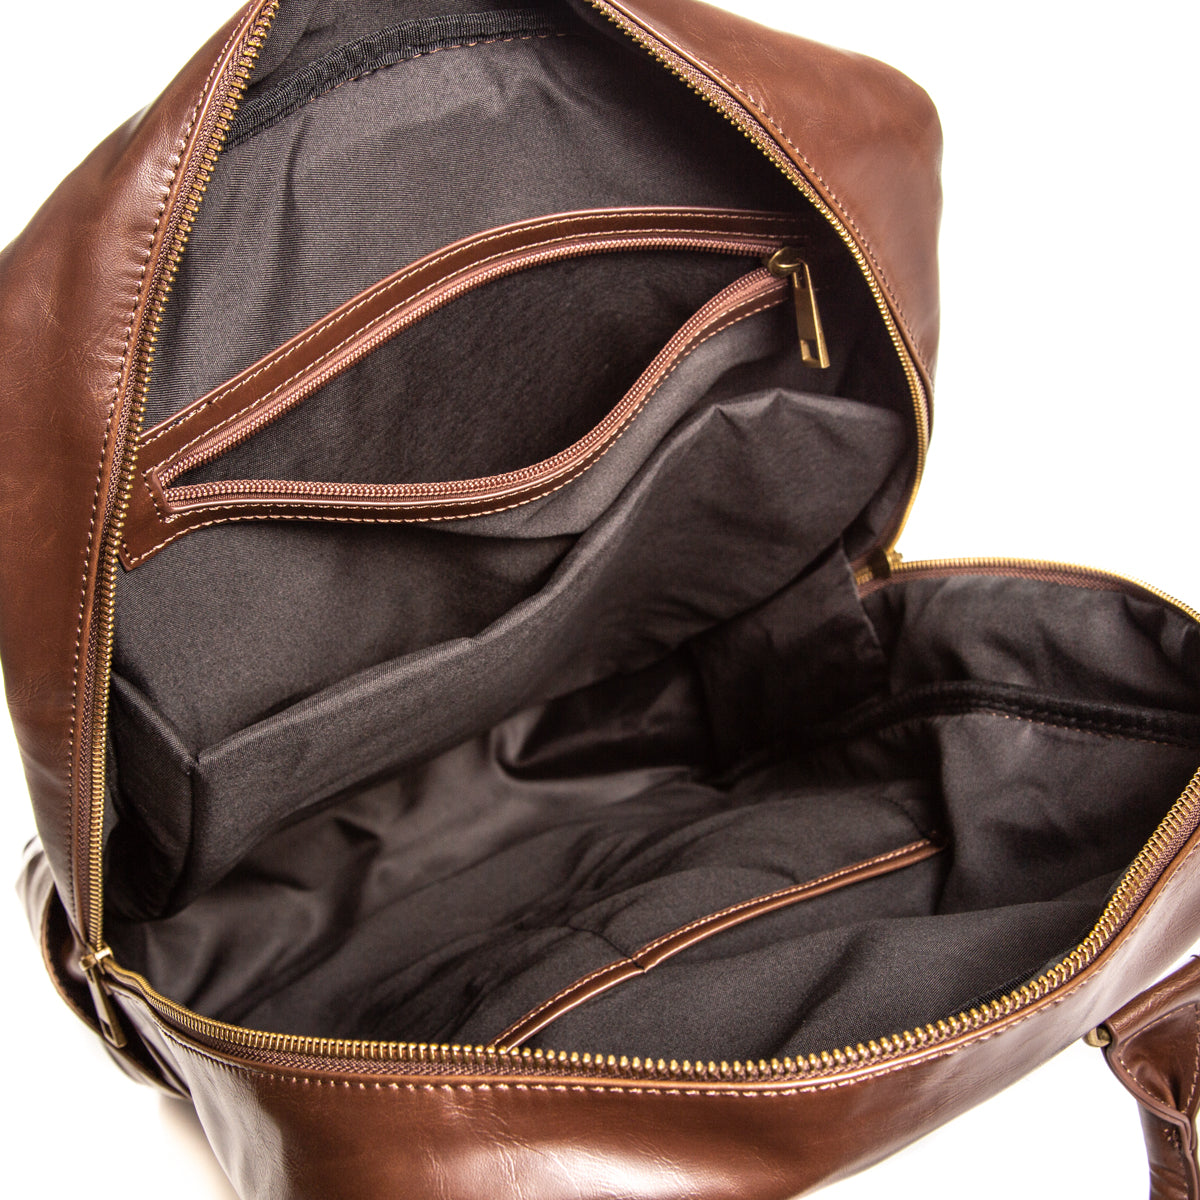 Branded Laptop Backpack - Inside Pocket